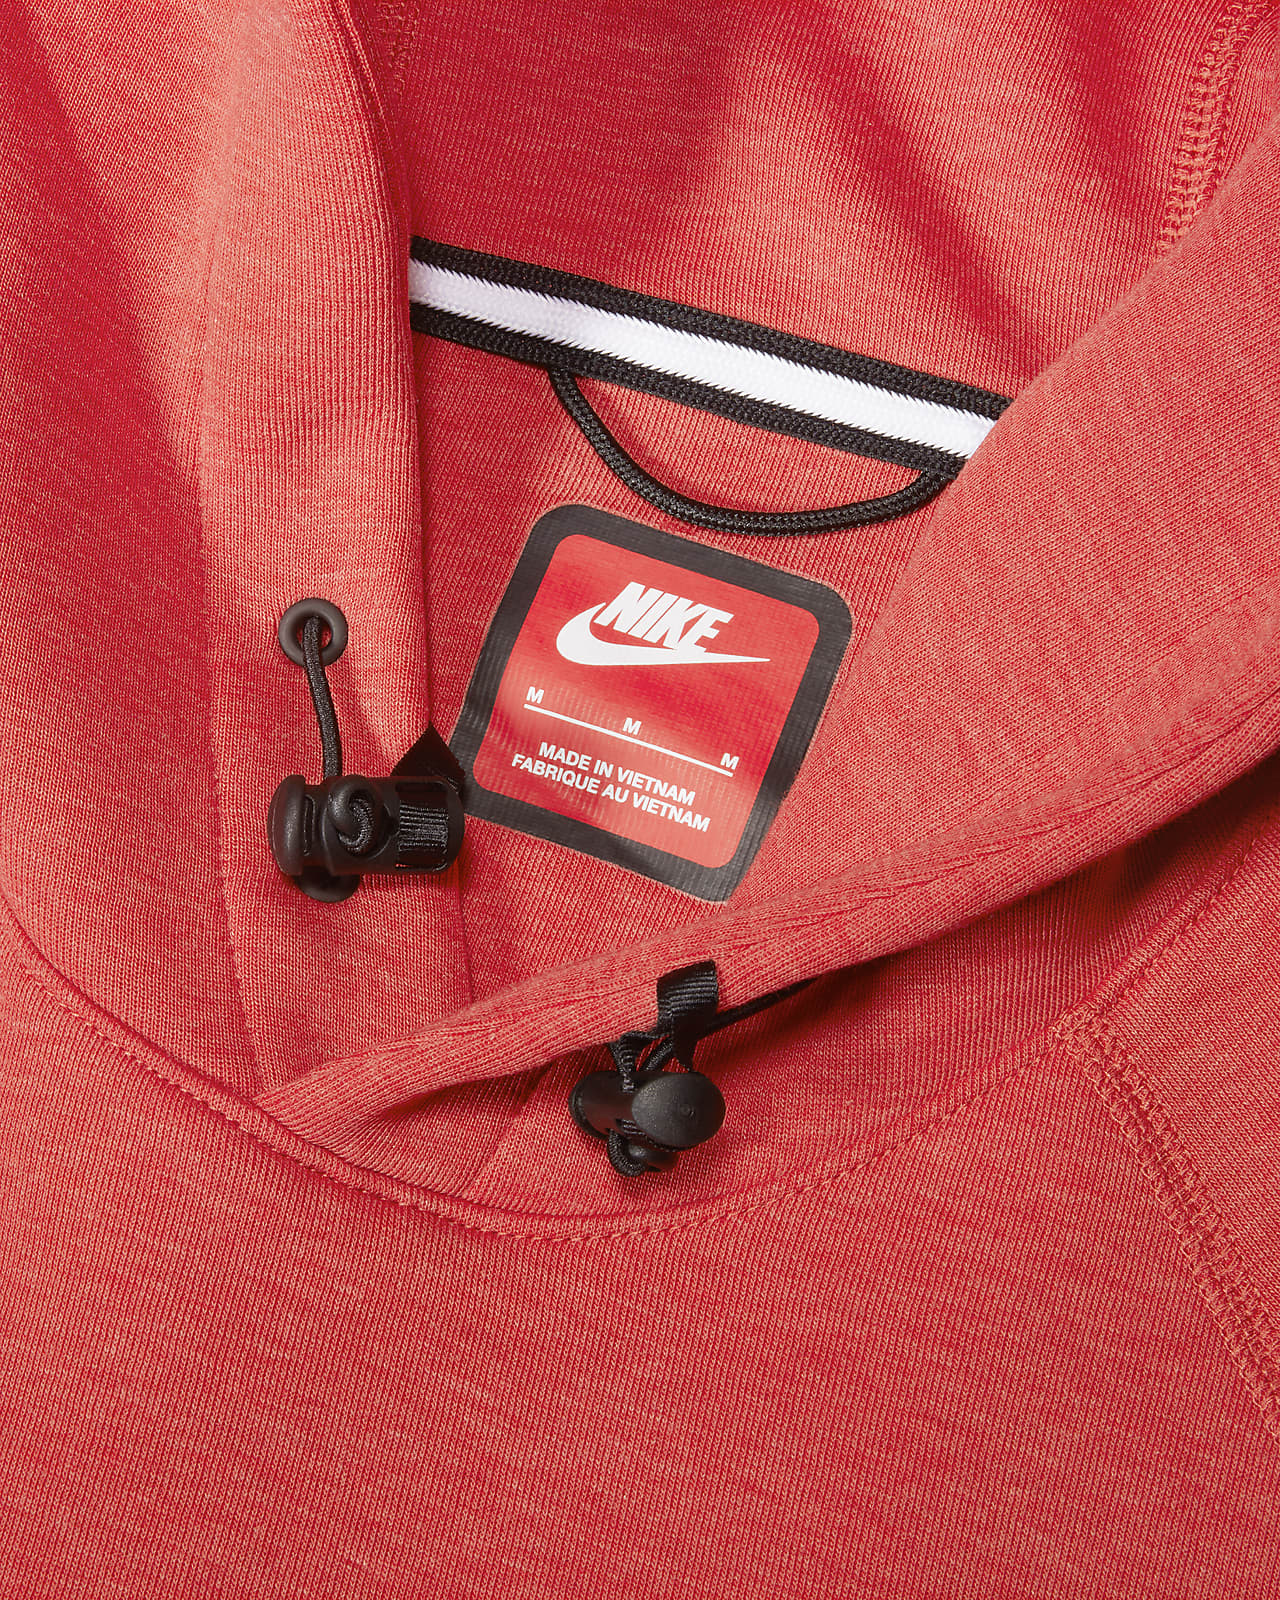 Huvtröjor och tröjor för män. Nike SE